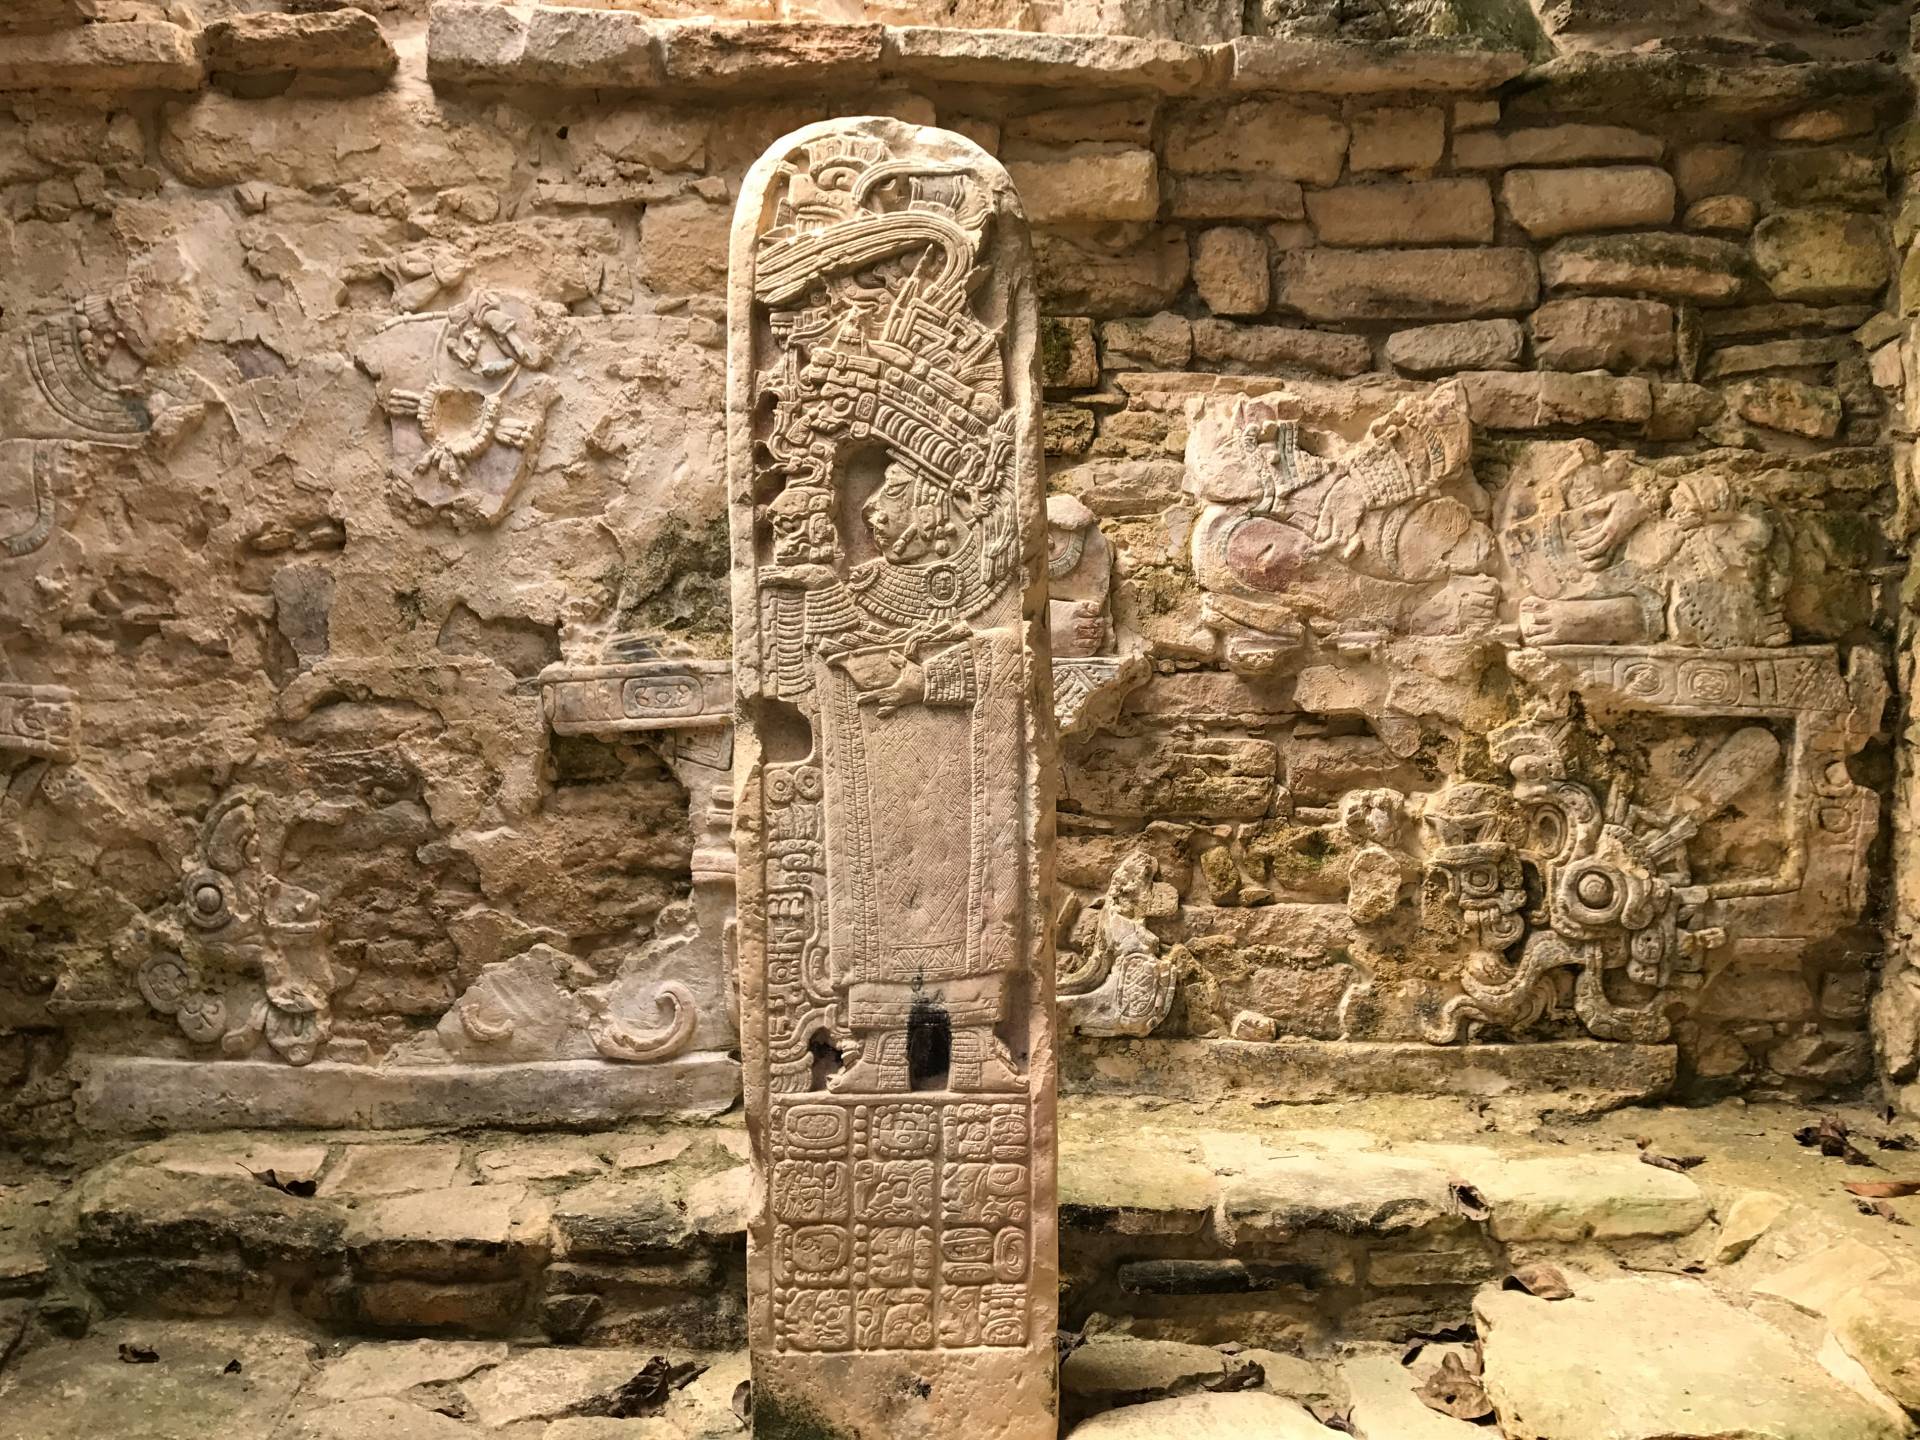 Stone stela in Yaxchilan